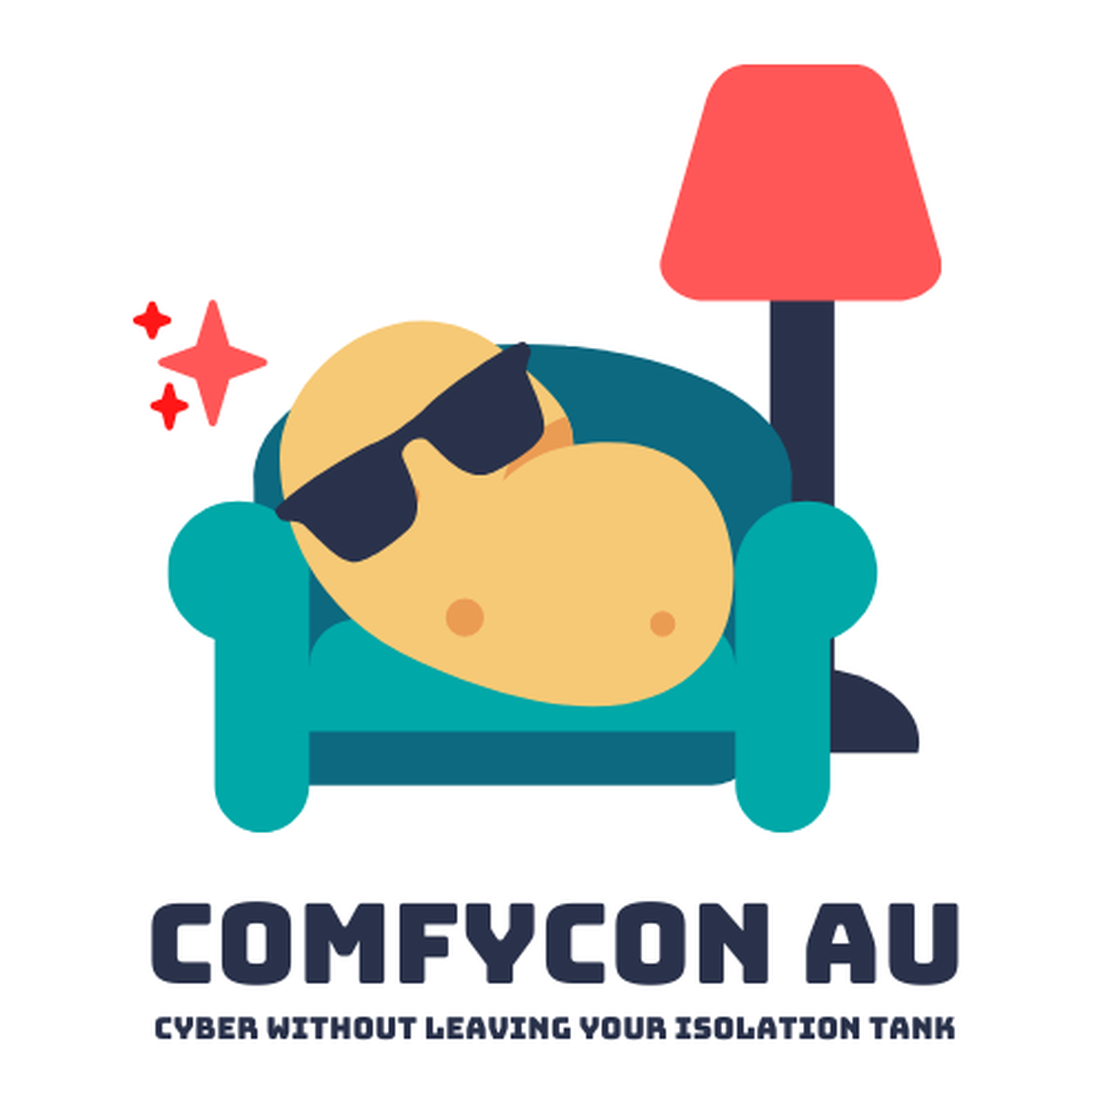 ComfyCon AU, April 2020